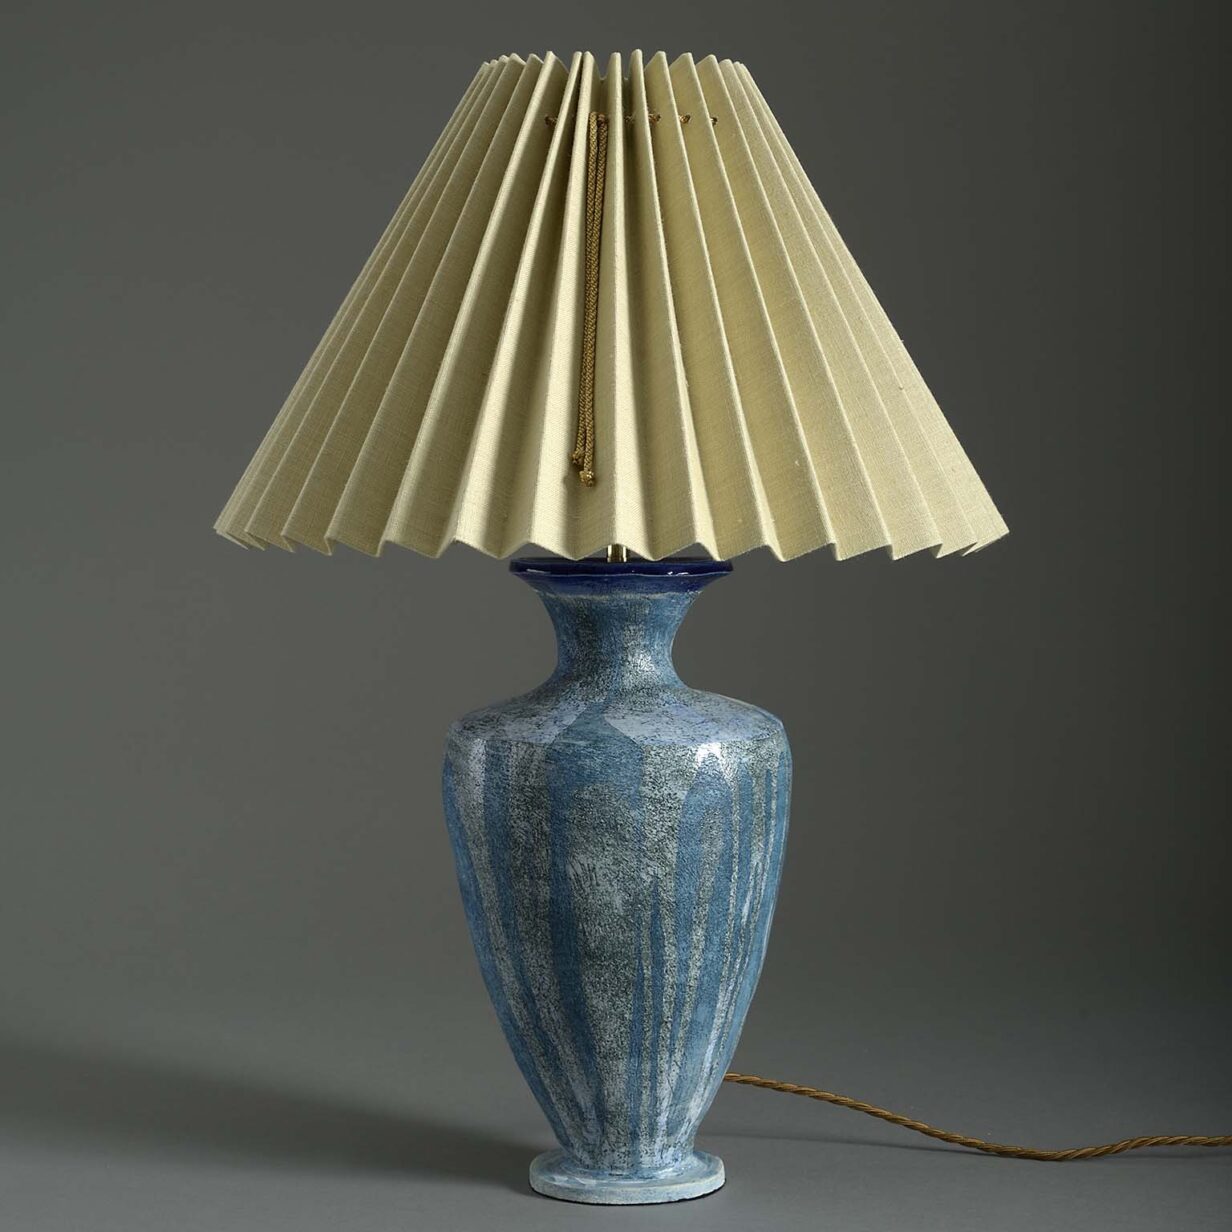 Blue art vase lamp